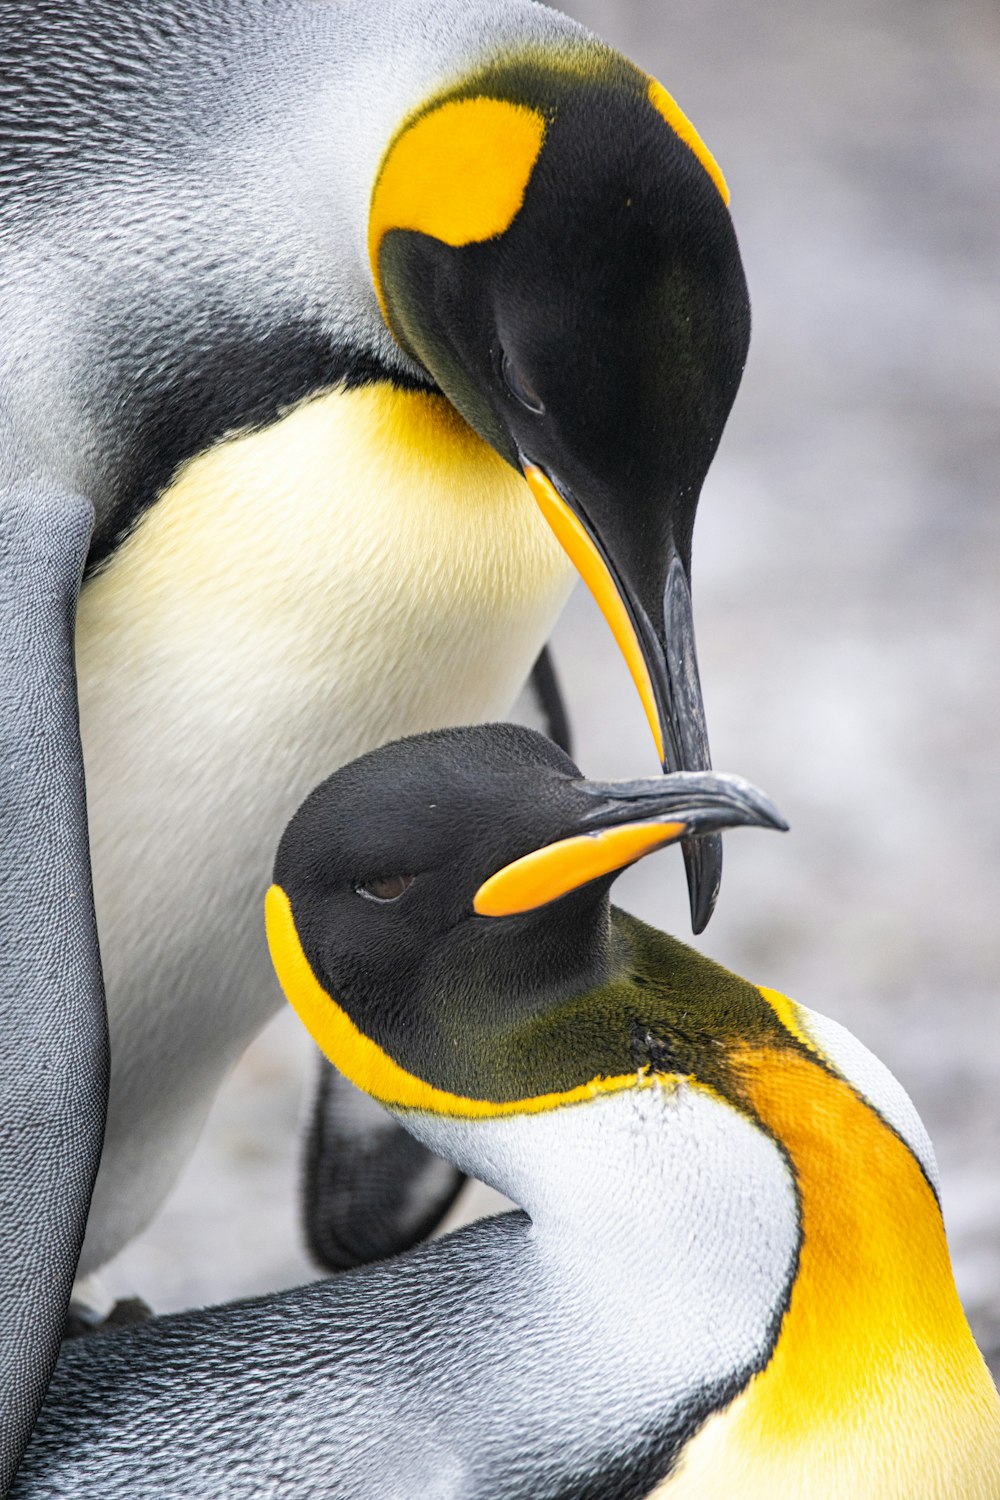 Un par de pingüinos parados uno al lado del otro